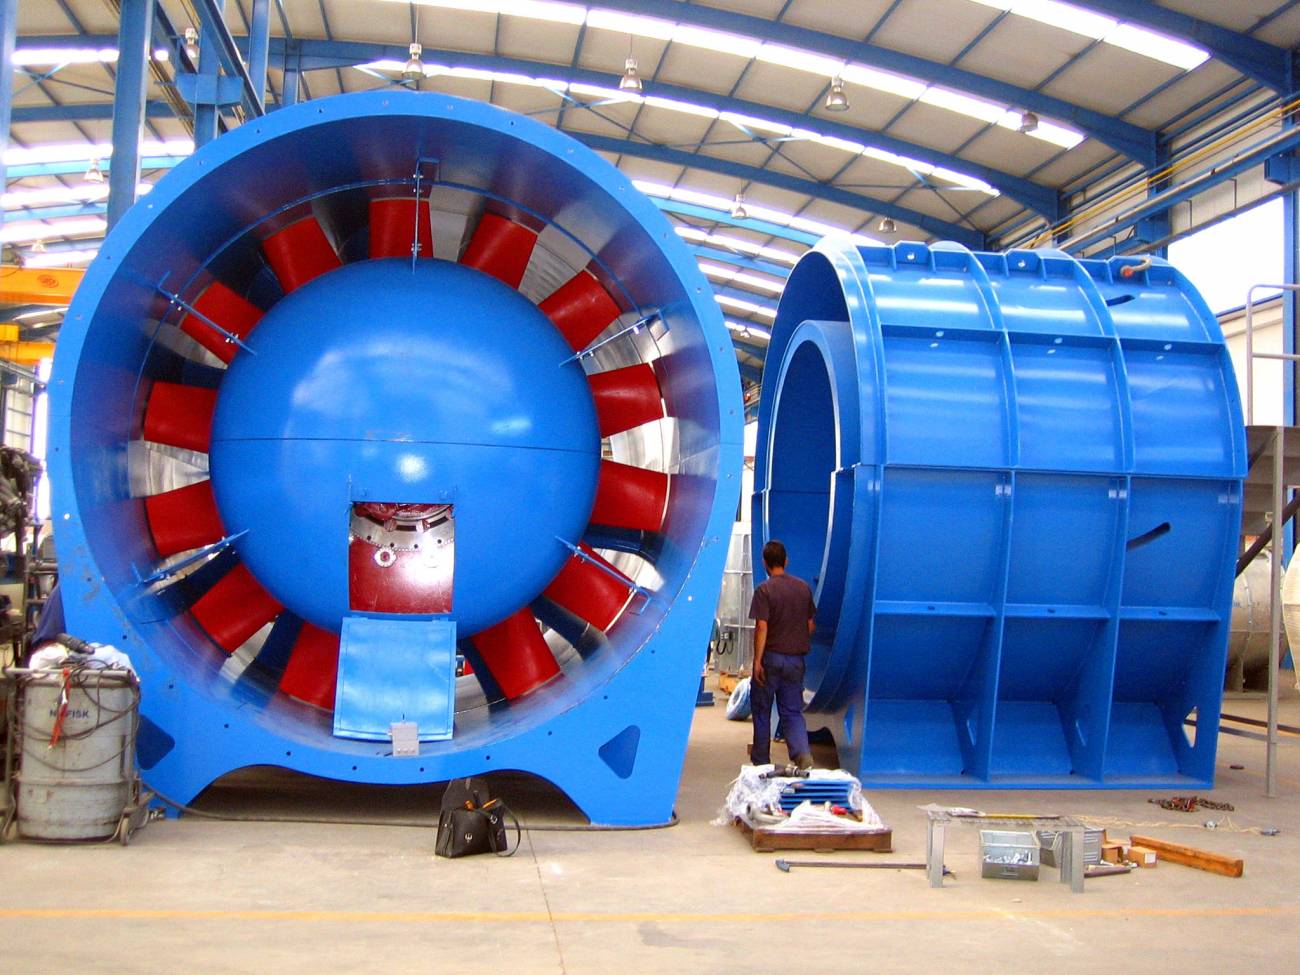 Ventilador de 4,2 m de diámetro para una mina rusa fabricado en fibra de carbono, en los talleres de Zitrón. Foto cedida por la empresa.